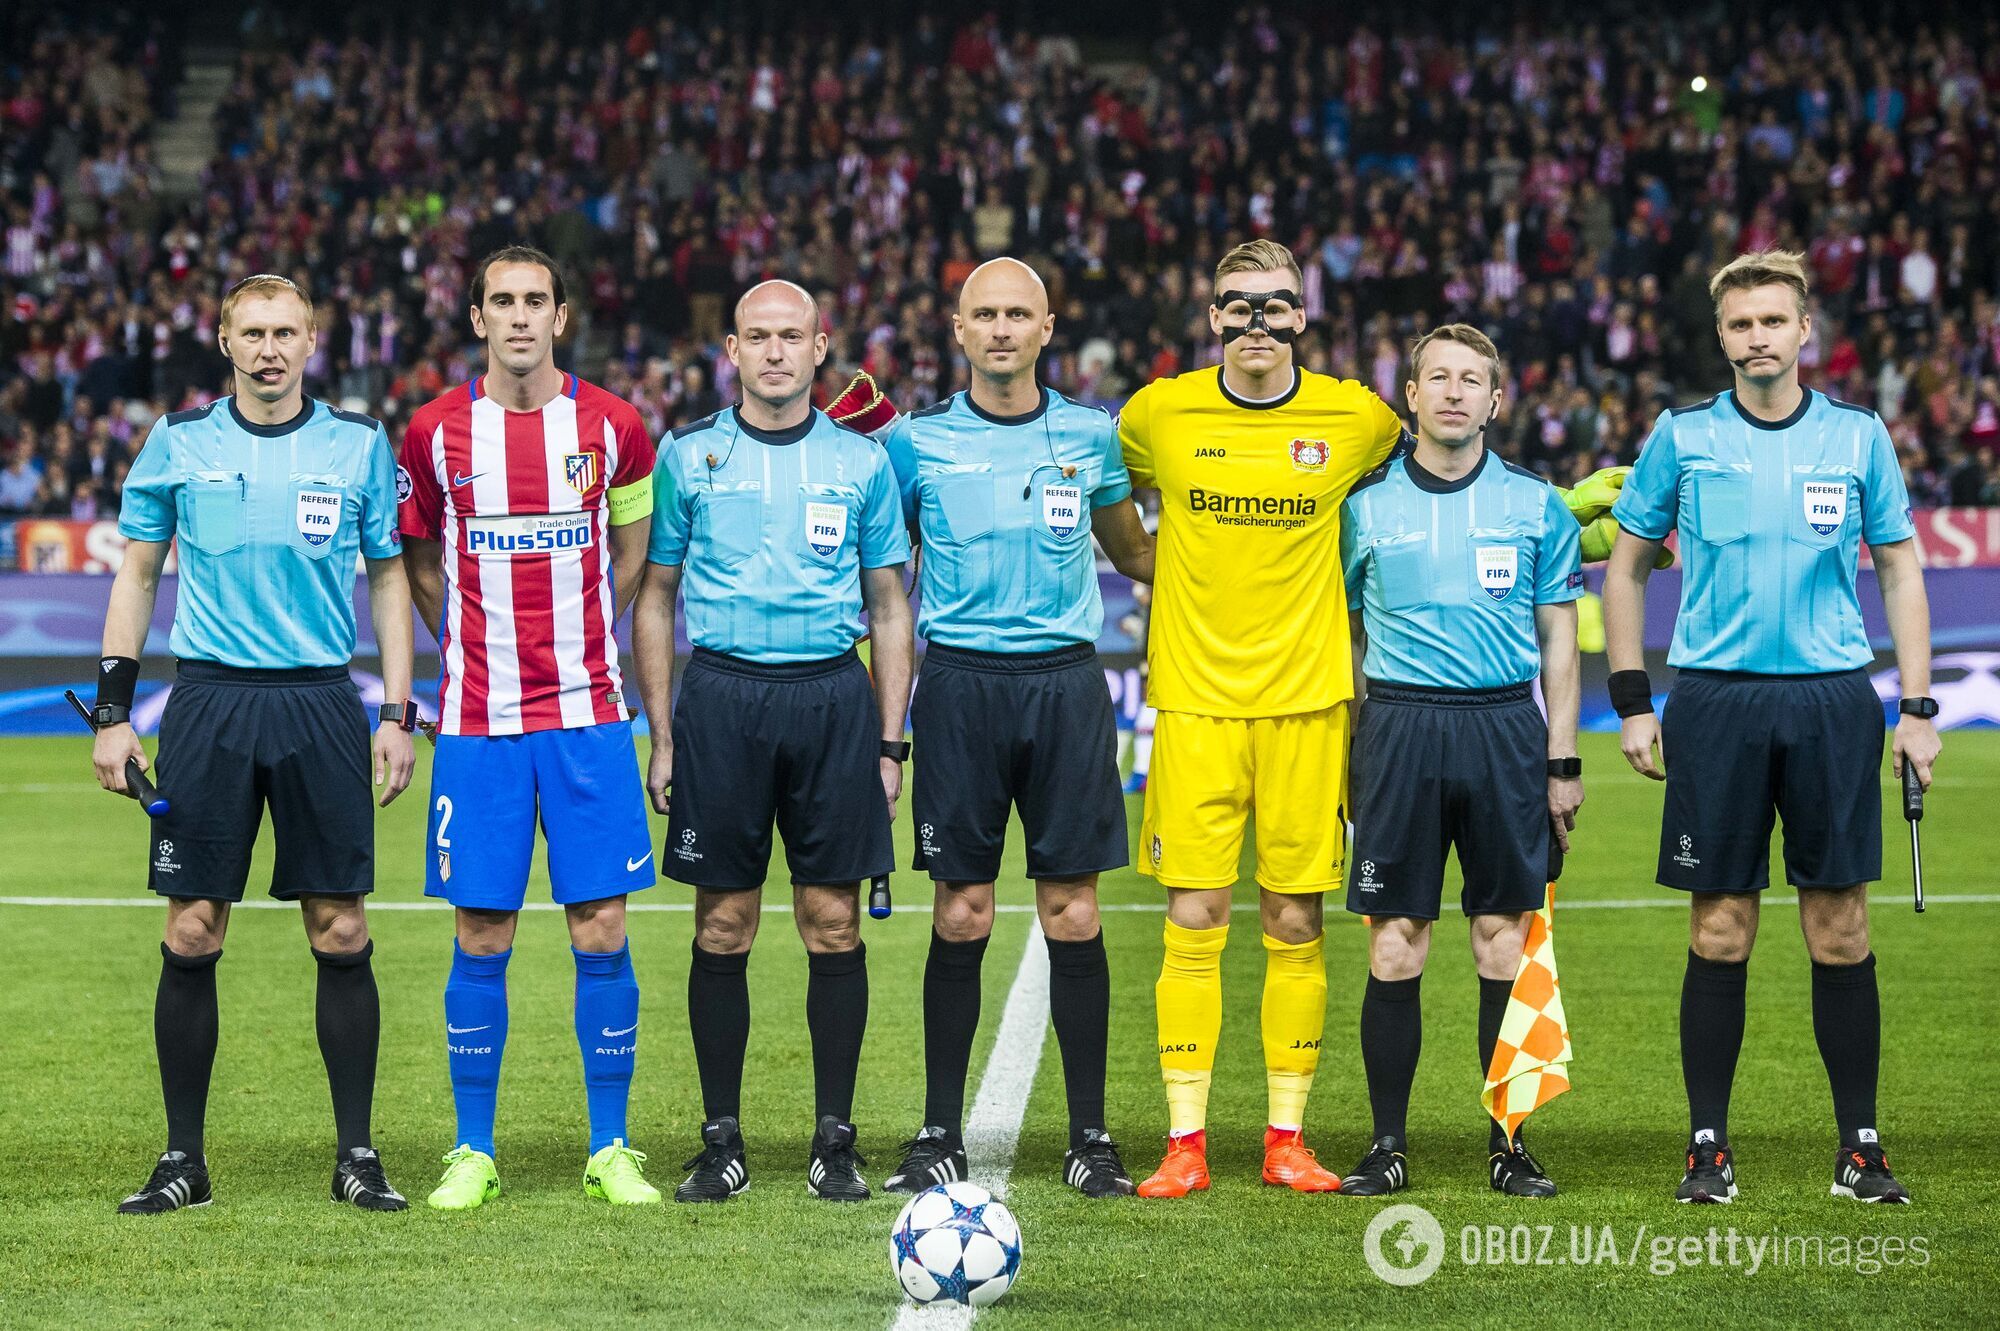 Сергій Лапочкін (крайній справа) перед матчем ЛЧ між "Атлетіко" і "Баєром"